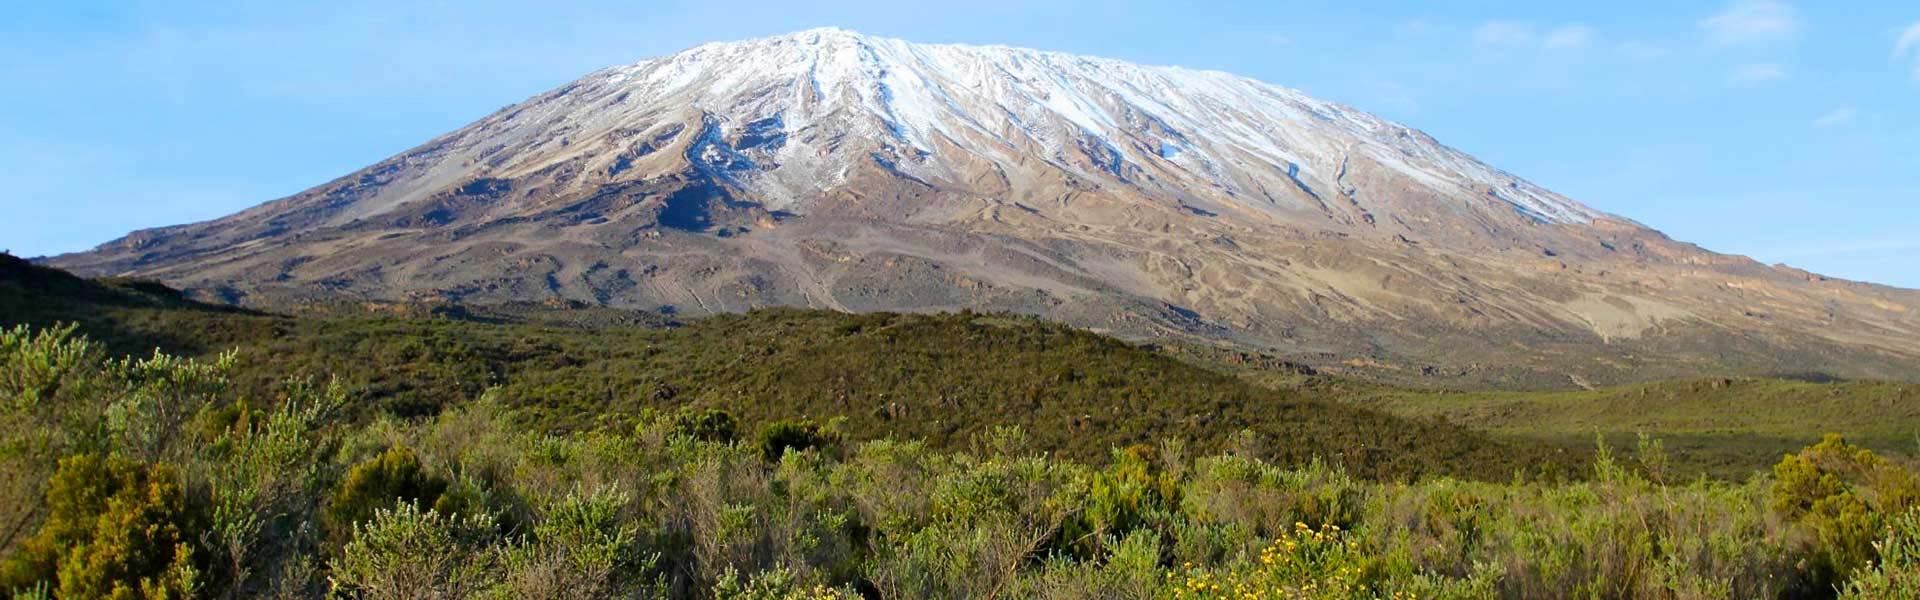 Kilimanjaro’s Climate Zones